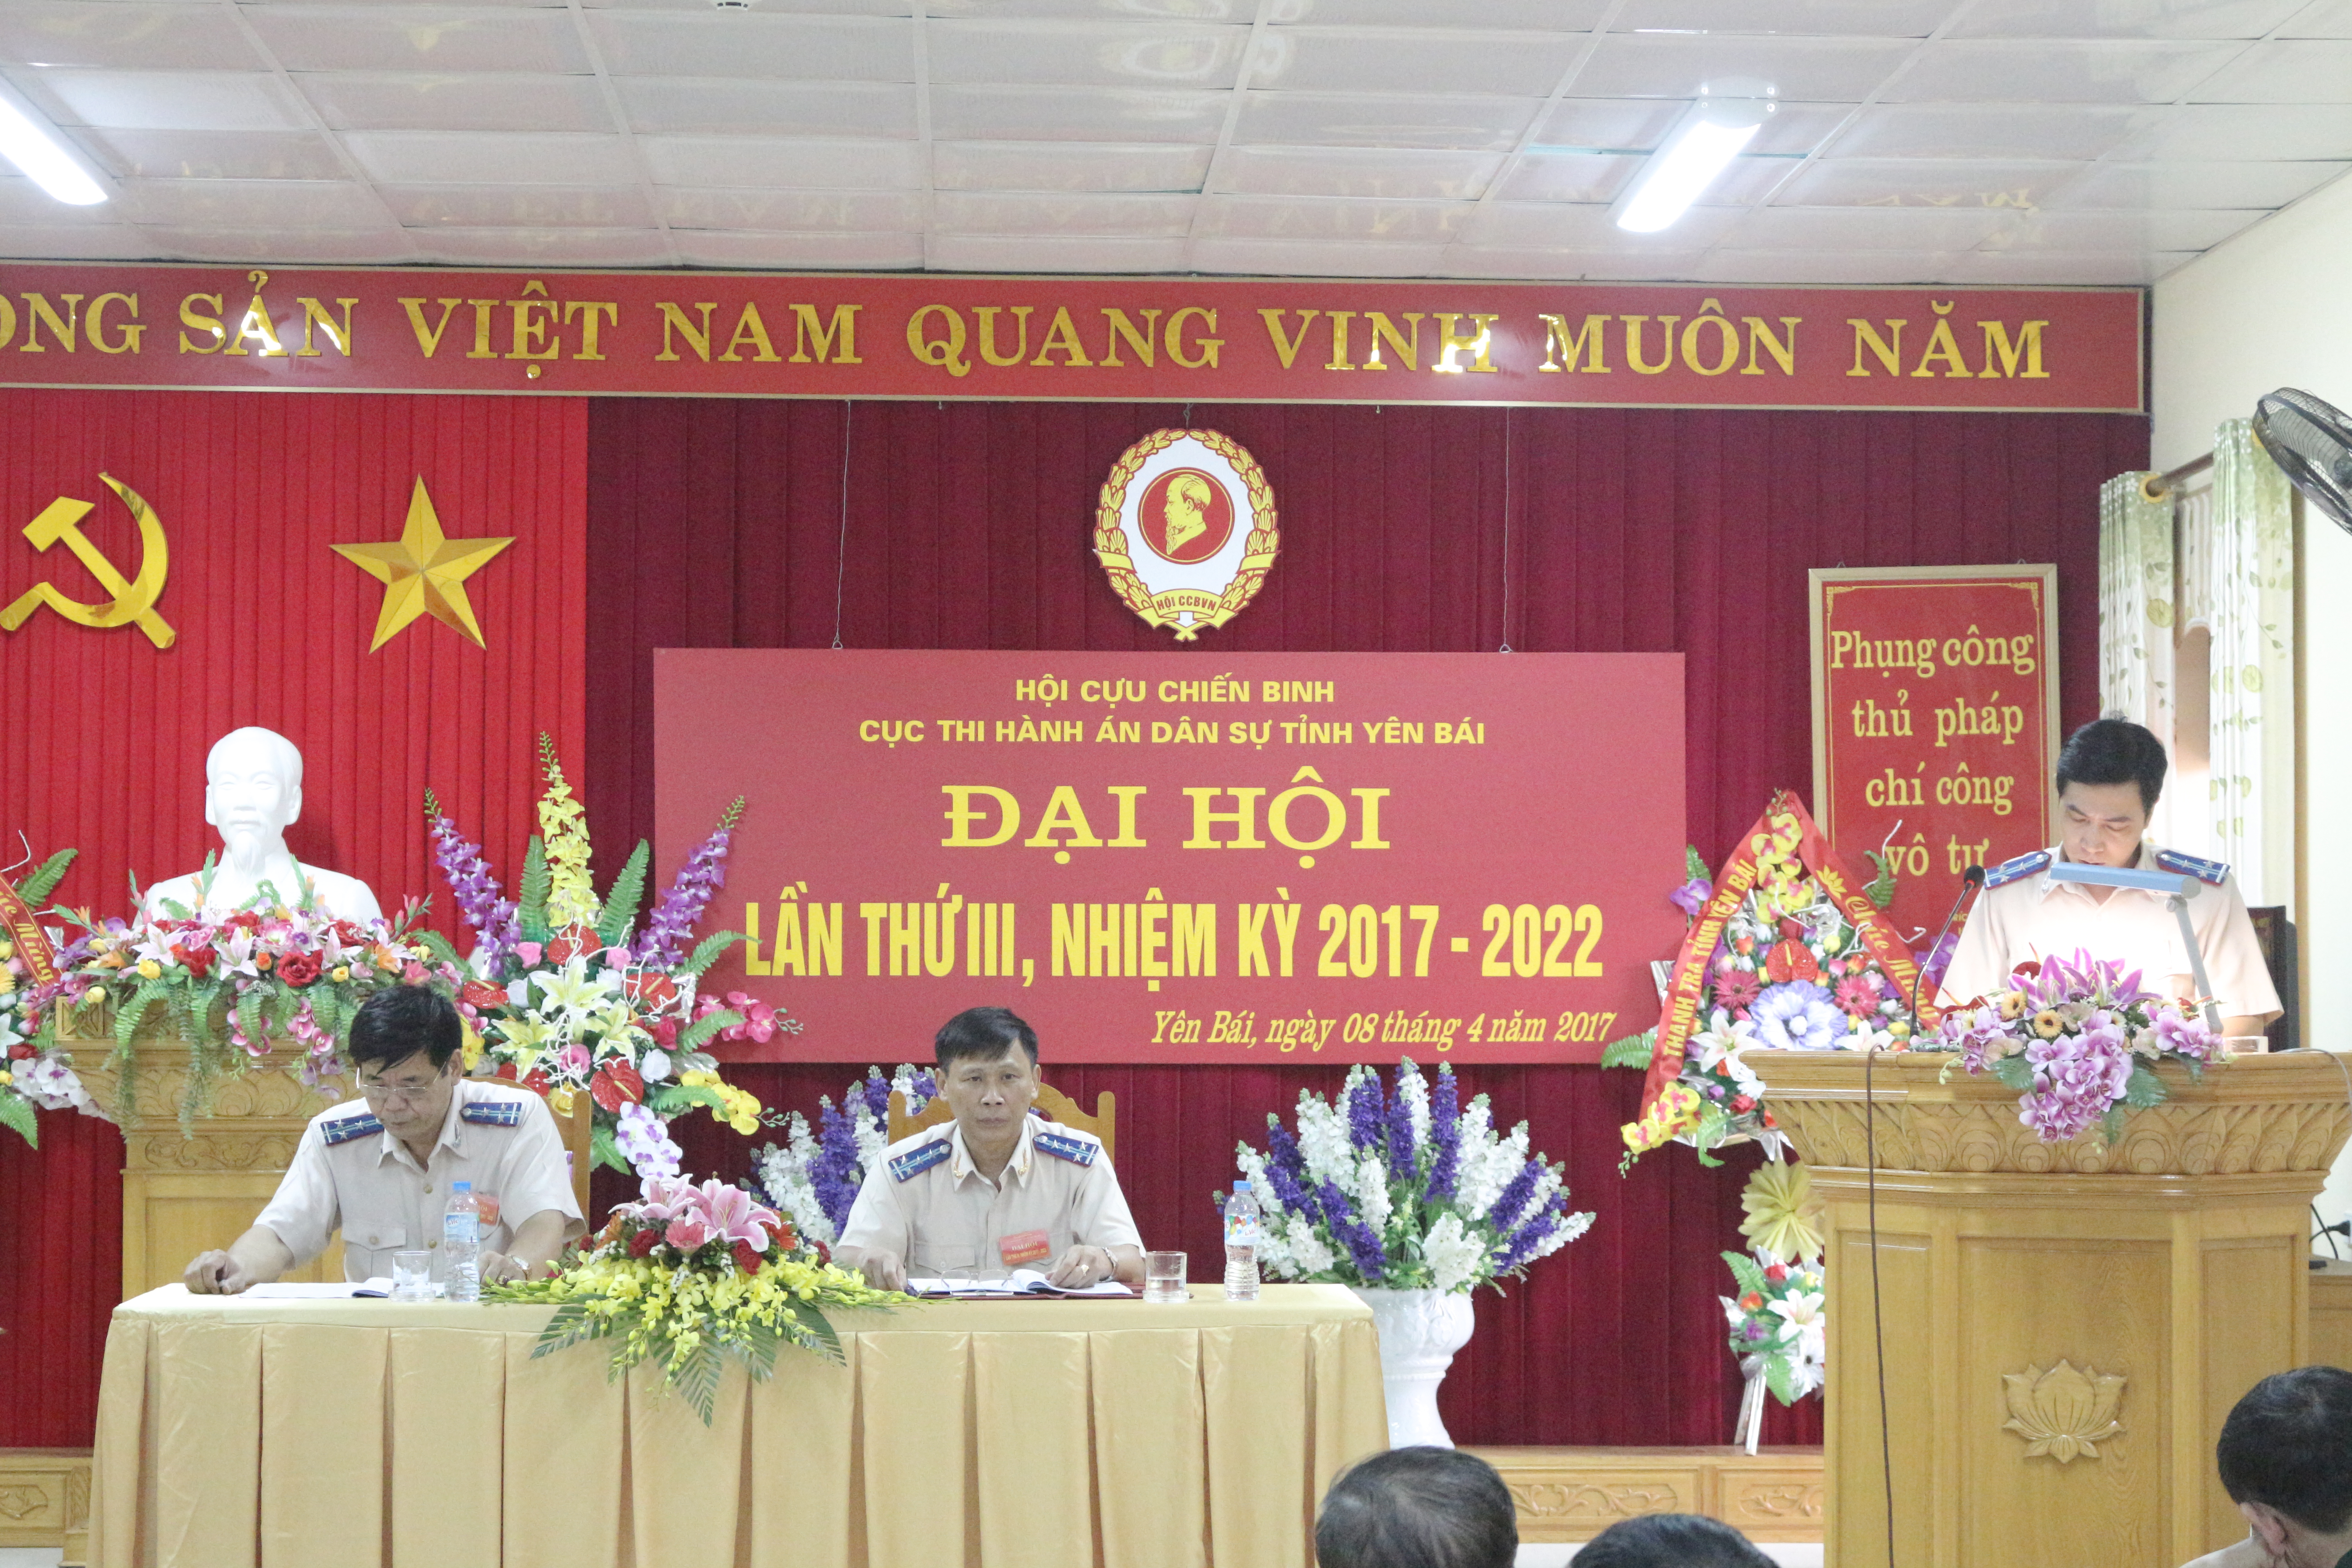 Đại hội Hội Cựu chiến binh Cục THADS tỉnh Yên Bái lần thứ III, nhiệm kỳ 2017 - 2022